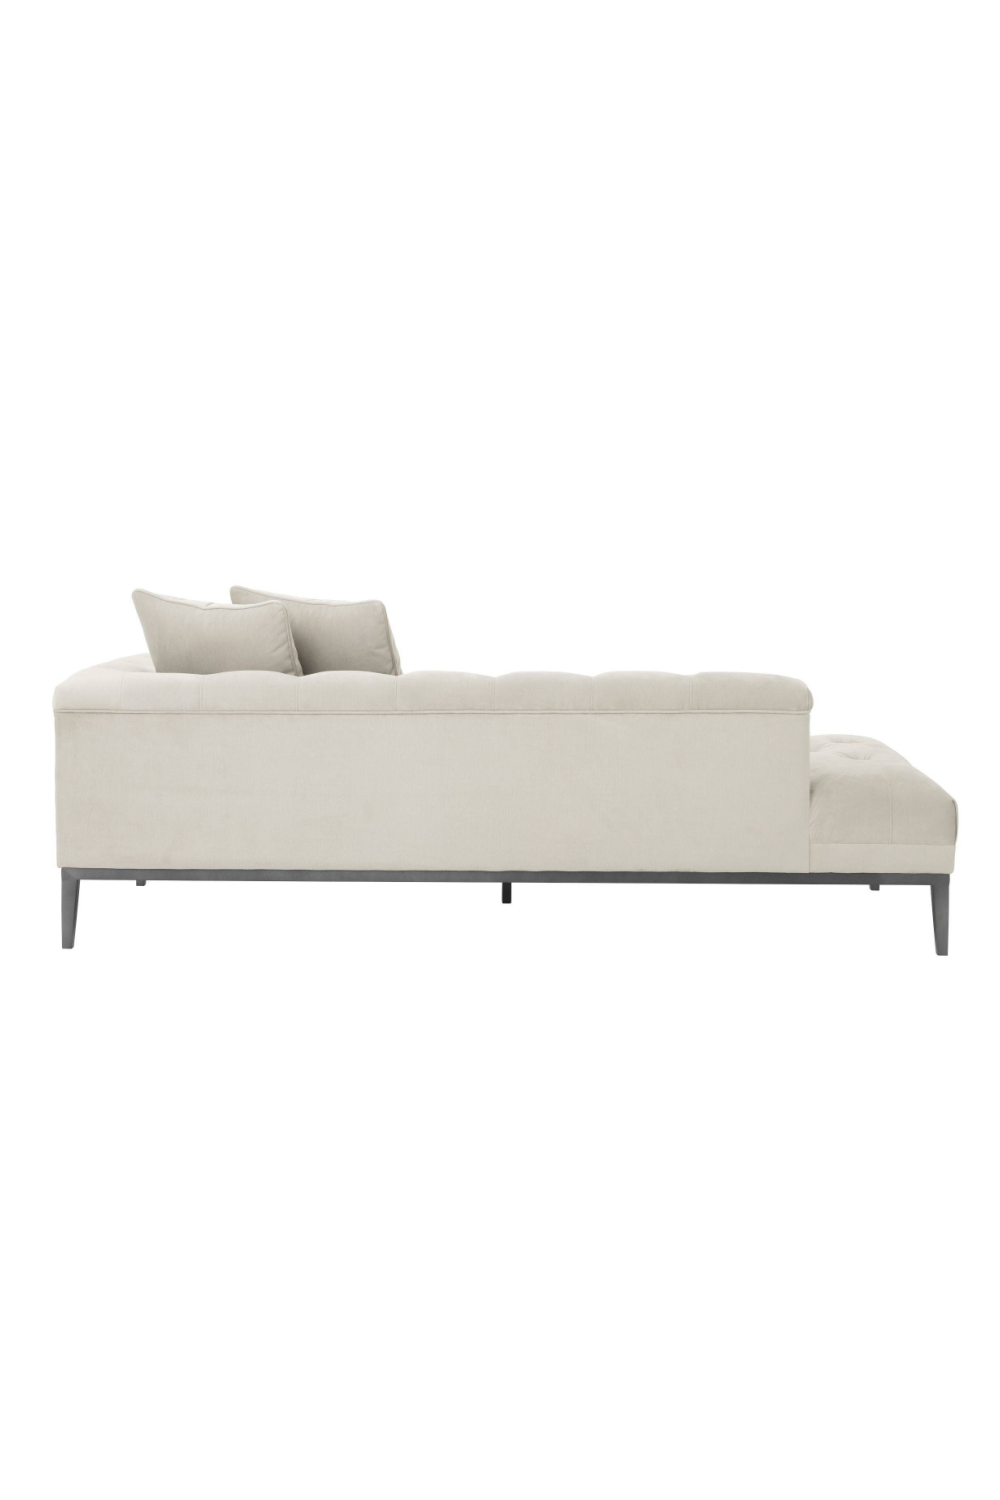 Gray Tufted Modular Sofa | Eichholtz Cesare | Oroa.com